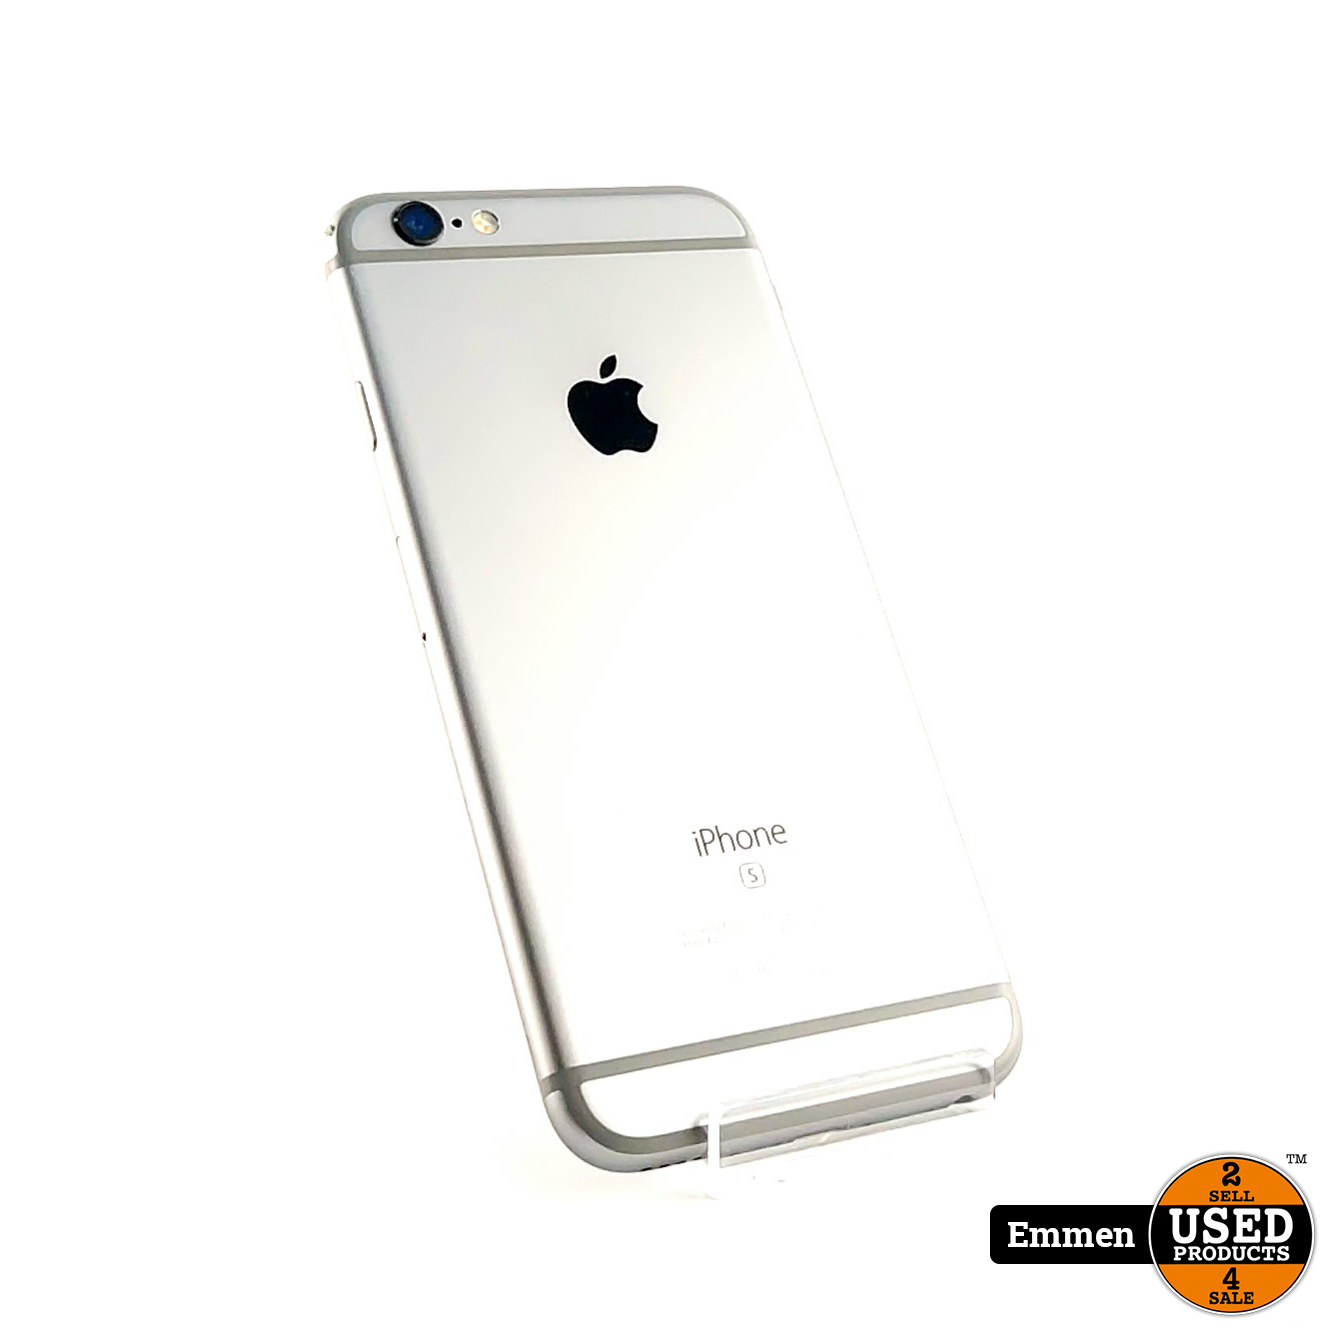 kiespijn veiligheid Wijde selectie iPhone 6s 32GB Space Gray/Grijs | In Nette Staat - Used Products Emmen